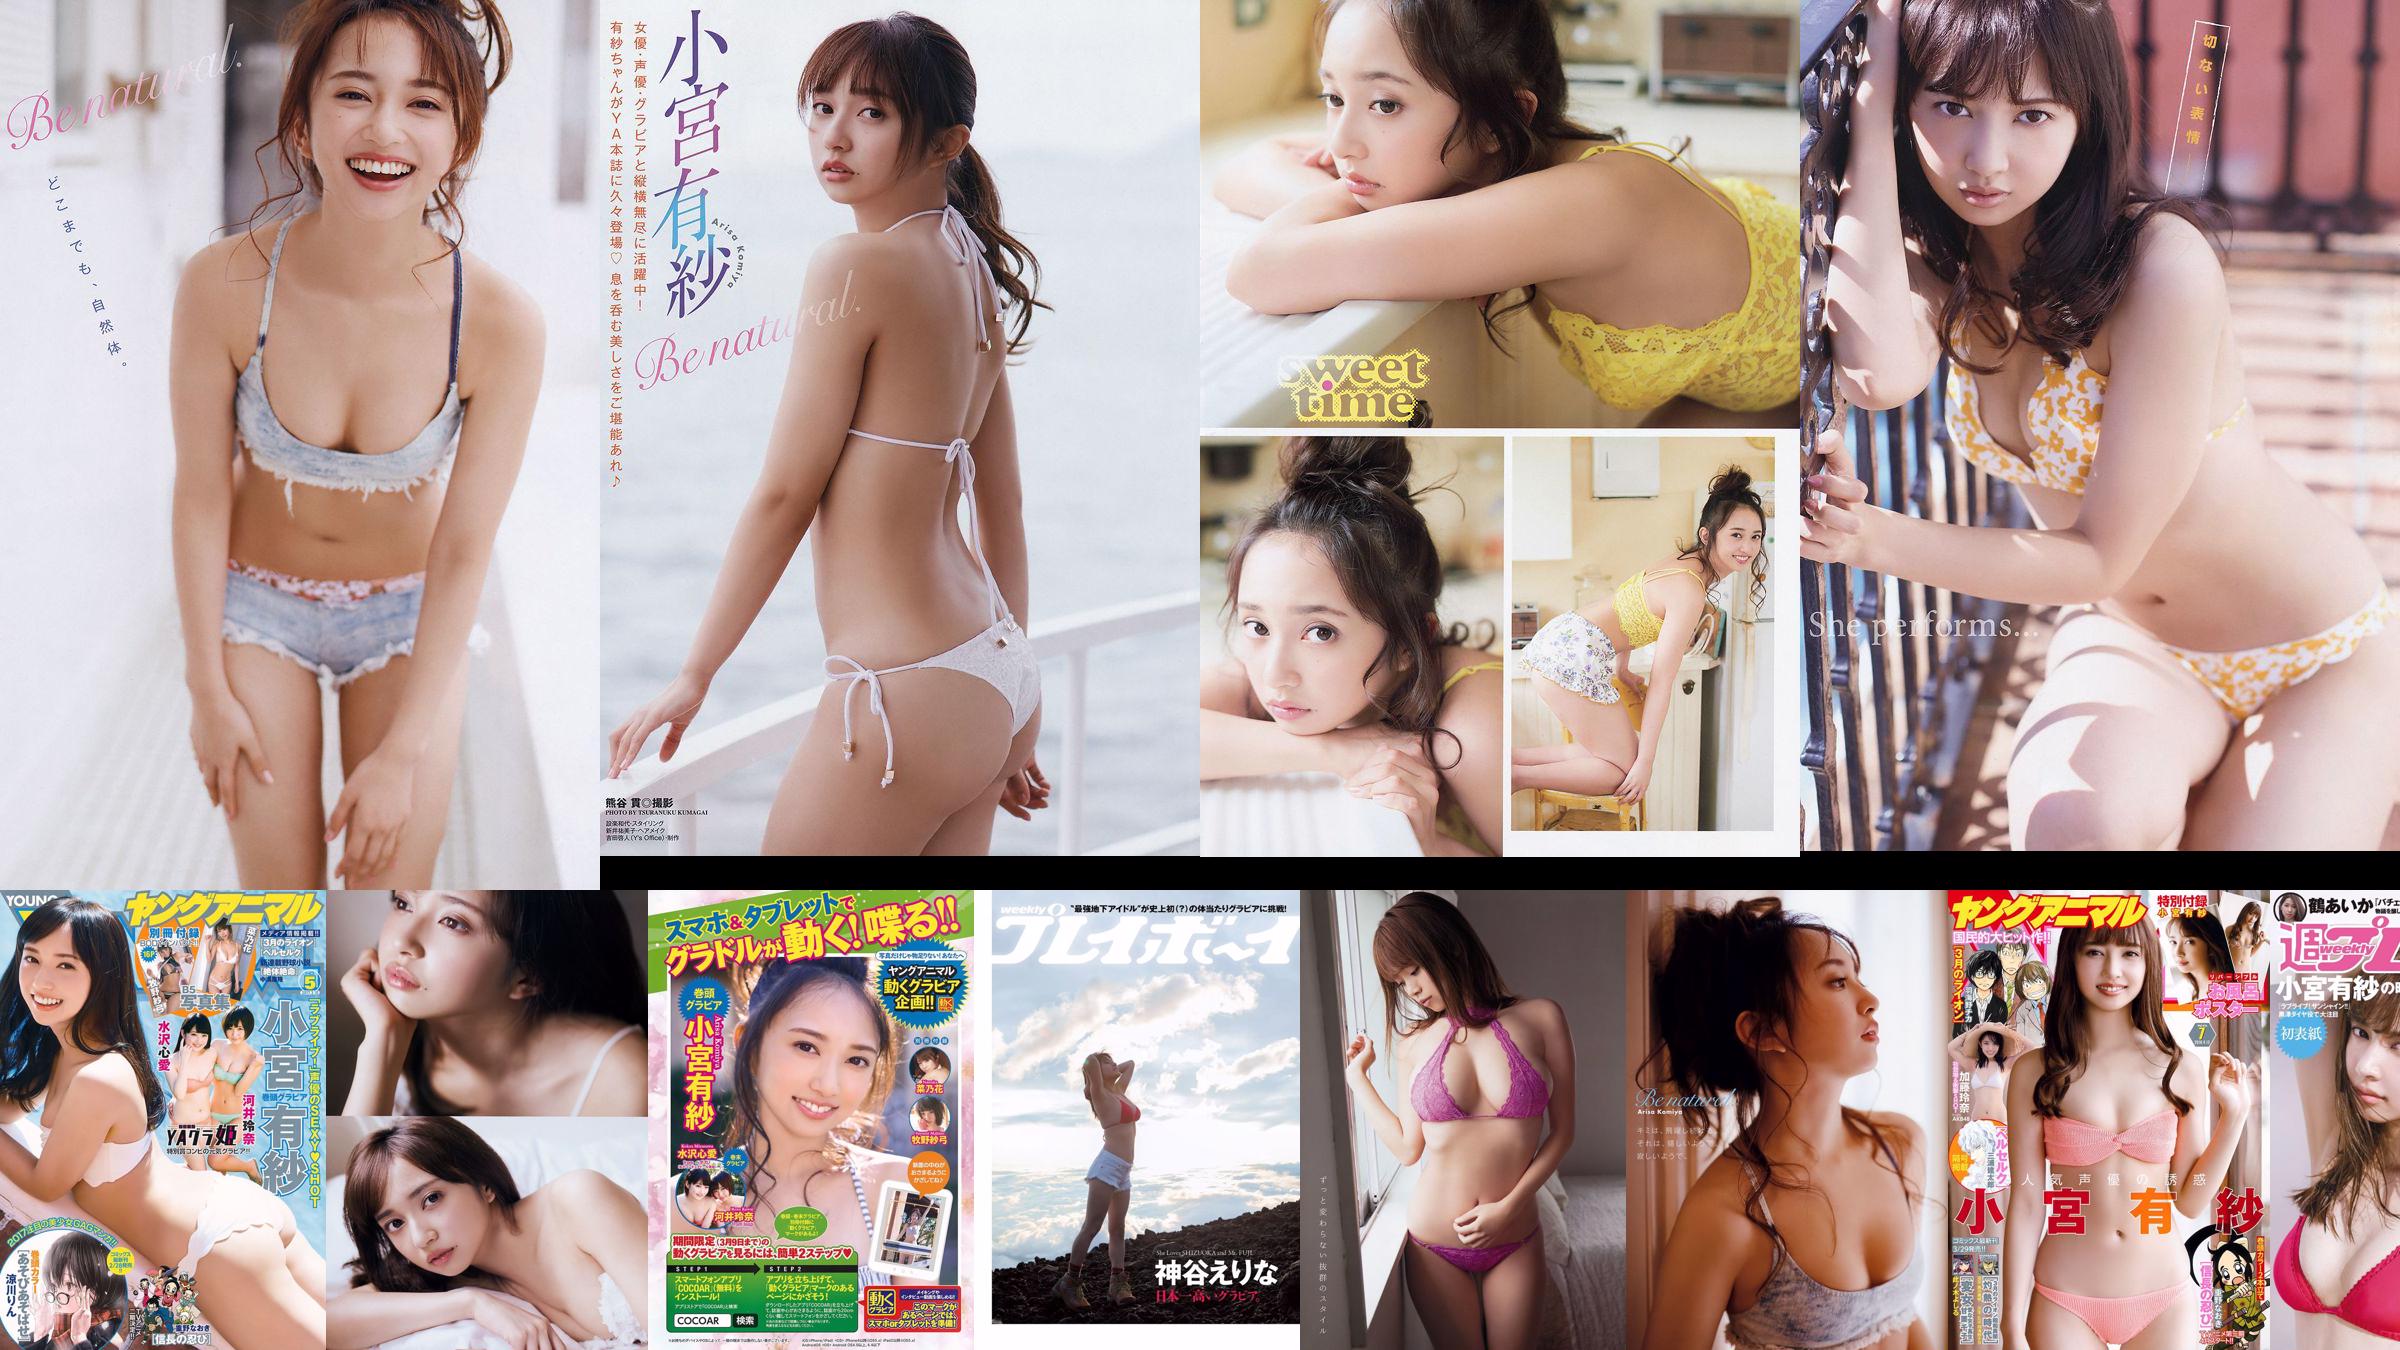 Arisa Komiya Aika Tsuru Sayaka Isoyama Kasumi Arimura Rina Otomo Sei Shiraishi Erina Kamiya [Wöchentlicher Playboy] 2017 Nr. 41 Foto No.950507 Seite 6